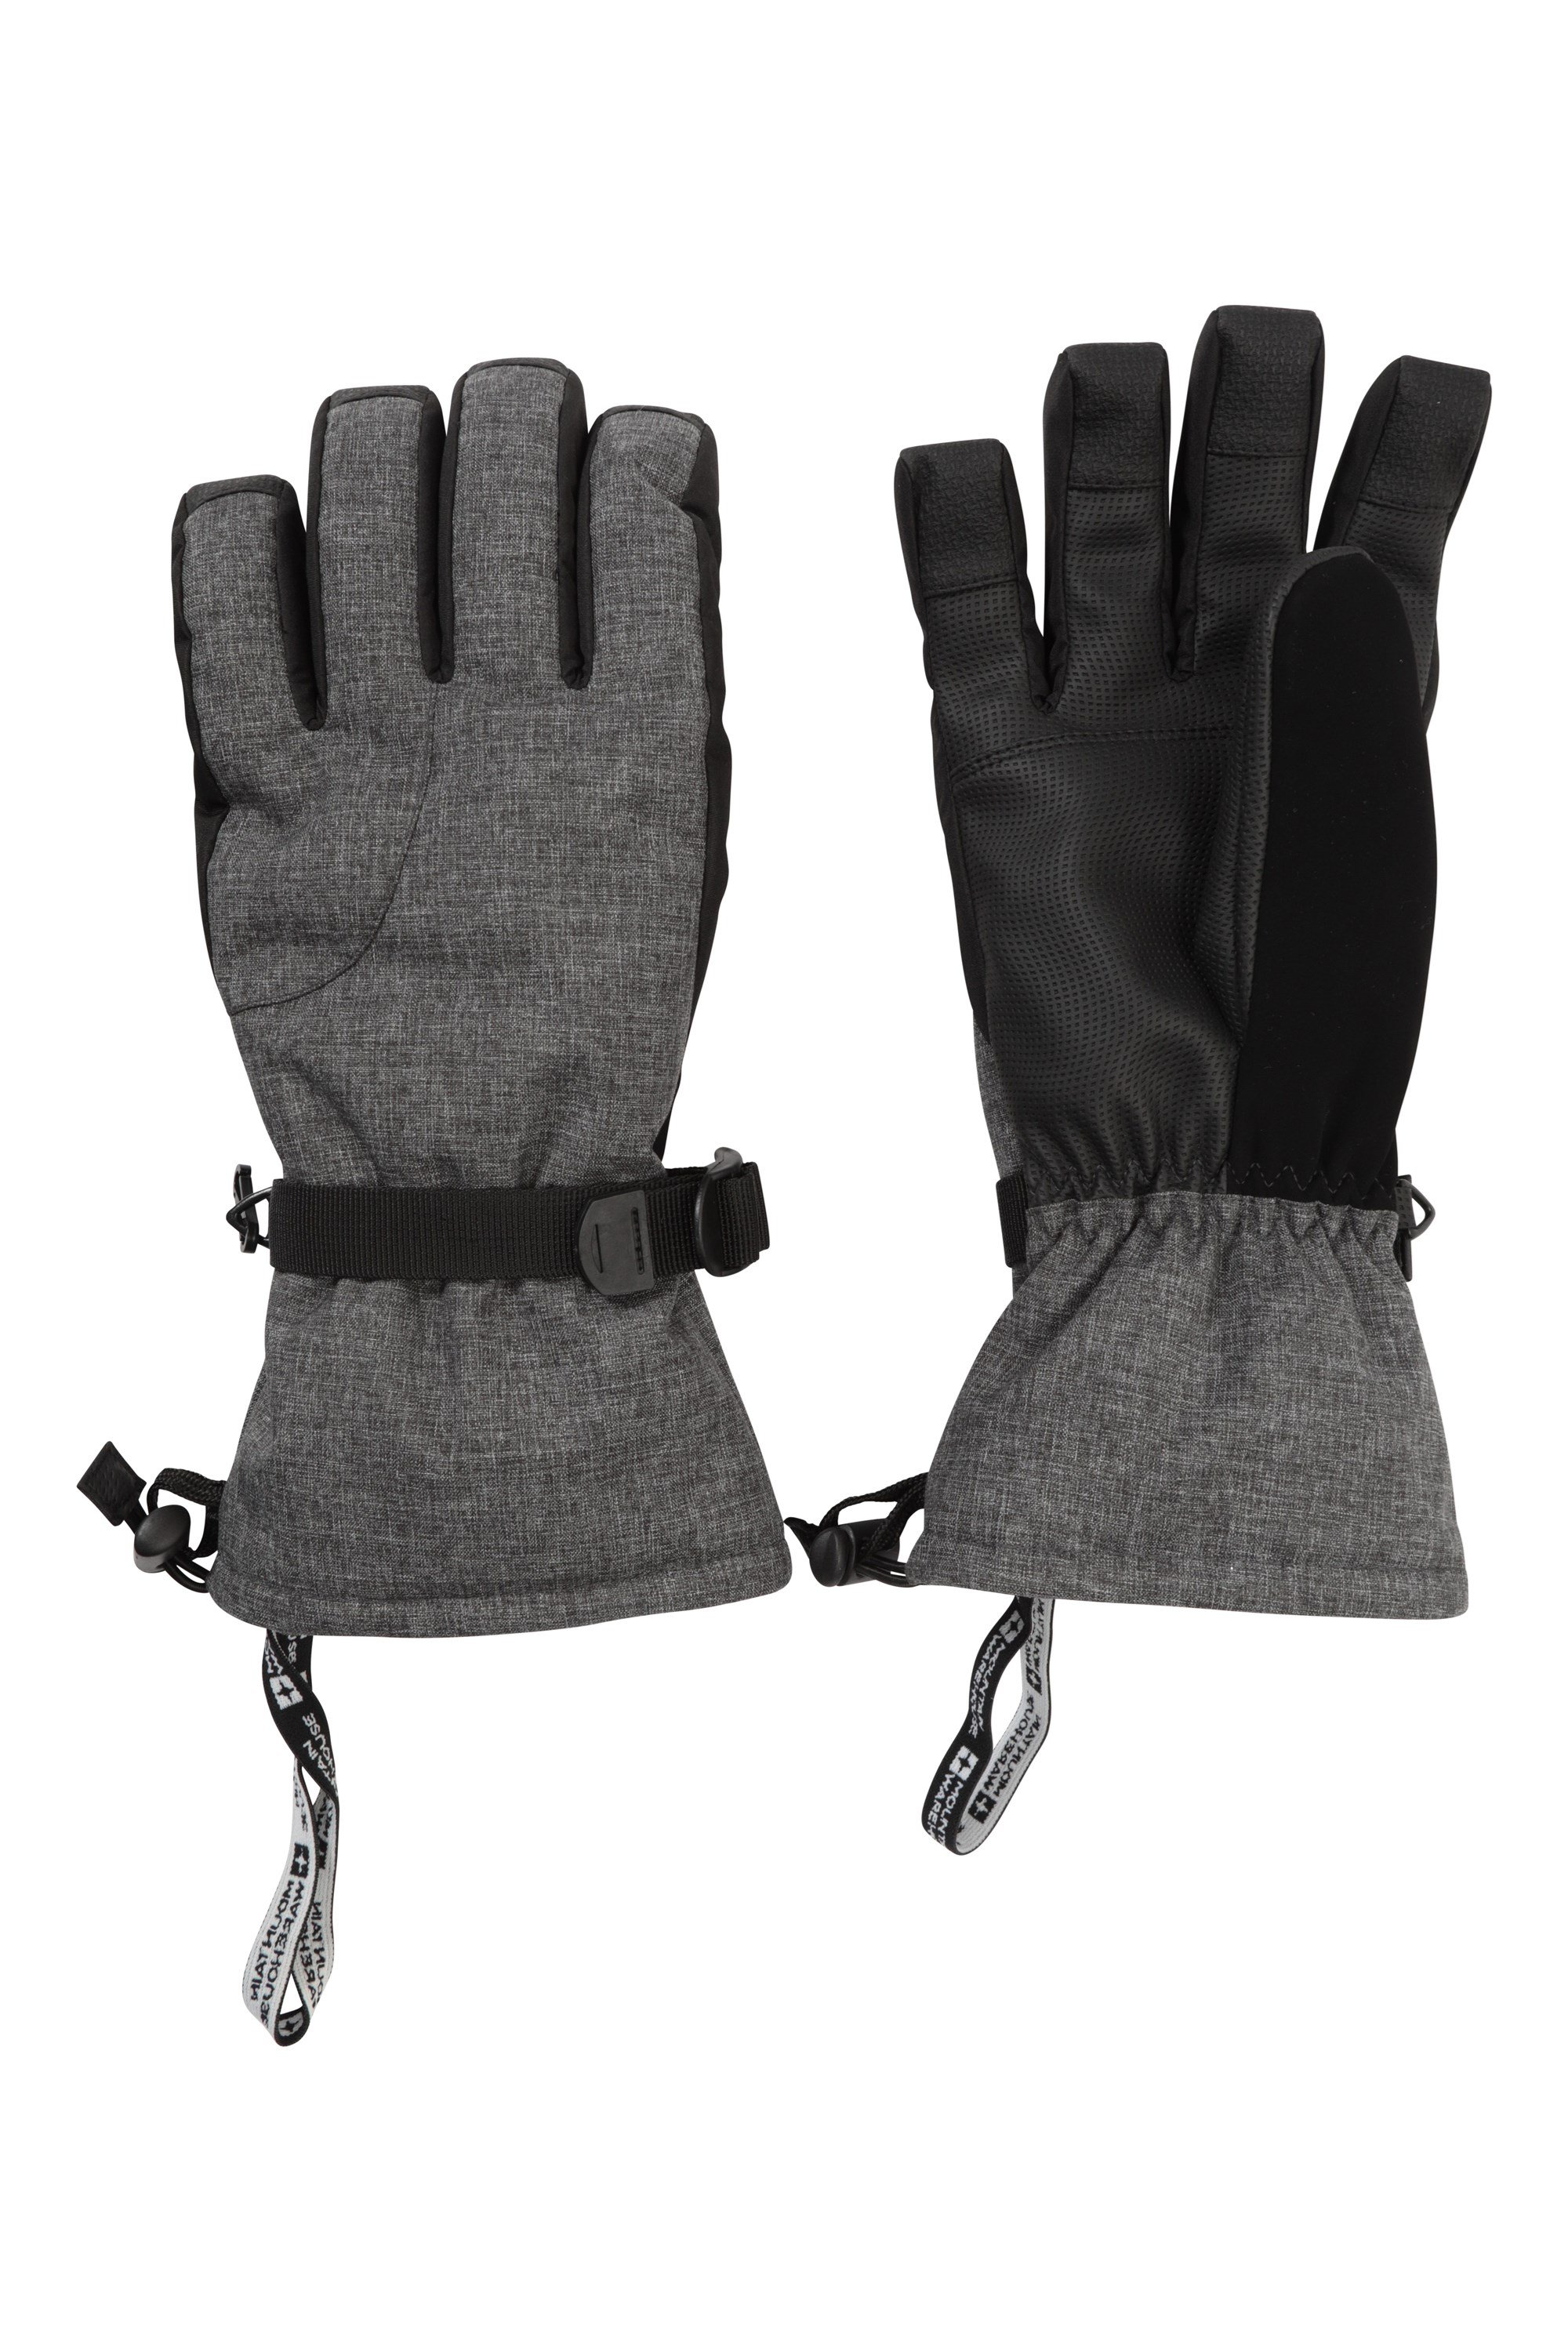 Lodge Mens Ski Gloves - Grey